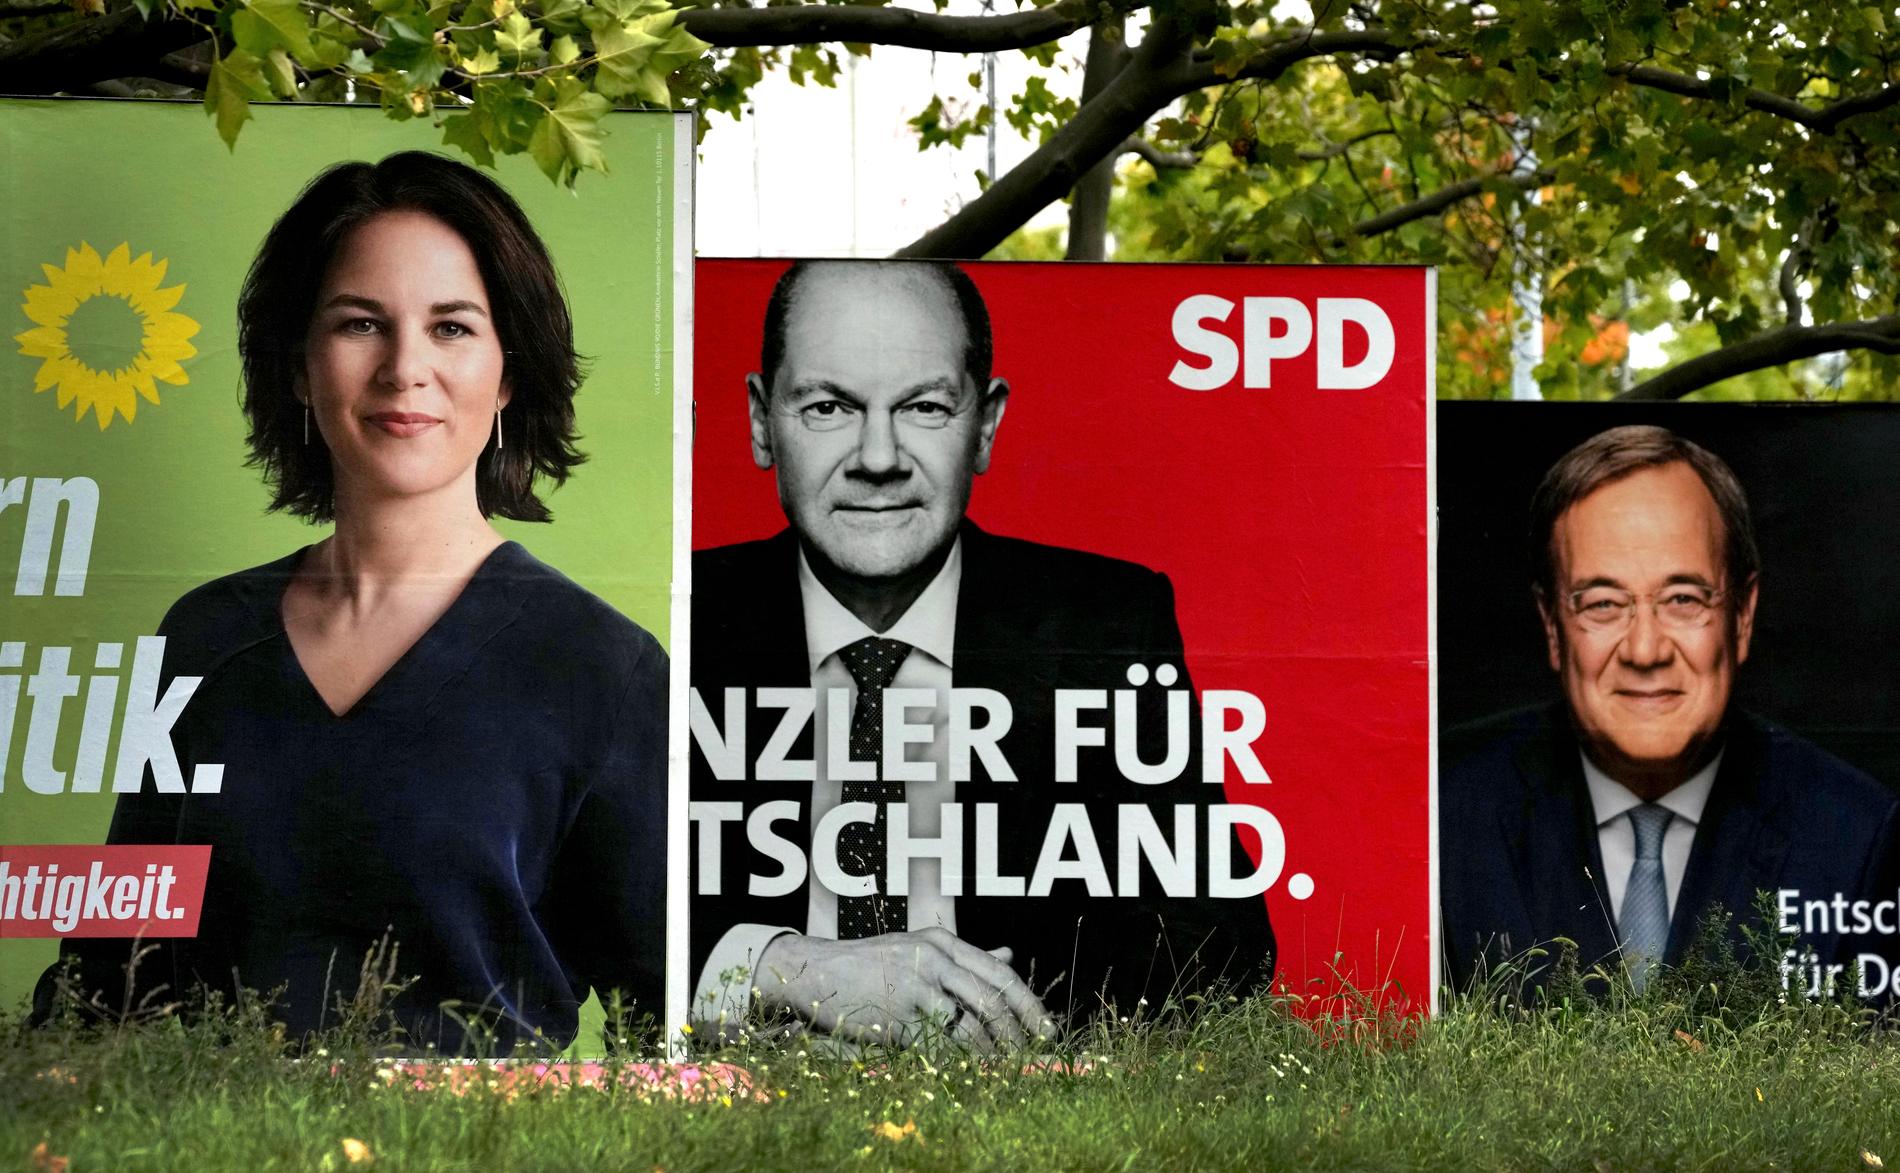 Valaffischer i Berlin för de tre kanslerkandidaterna i helgens tyska val: Annalena Baerbock från De gröna, Olaf Scholz för socialdemokratiska SPD och Armin Laschet från kristdemokratiskt konservativa CDU/CSU.